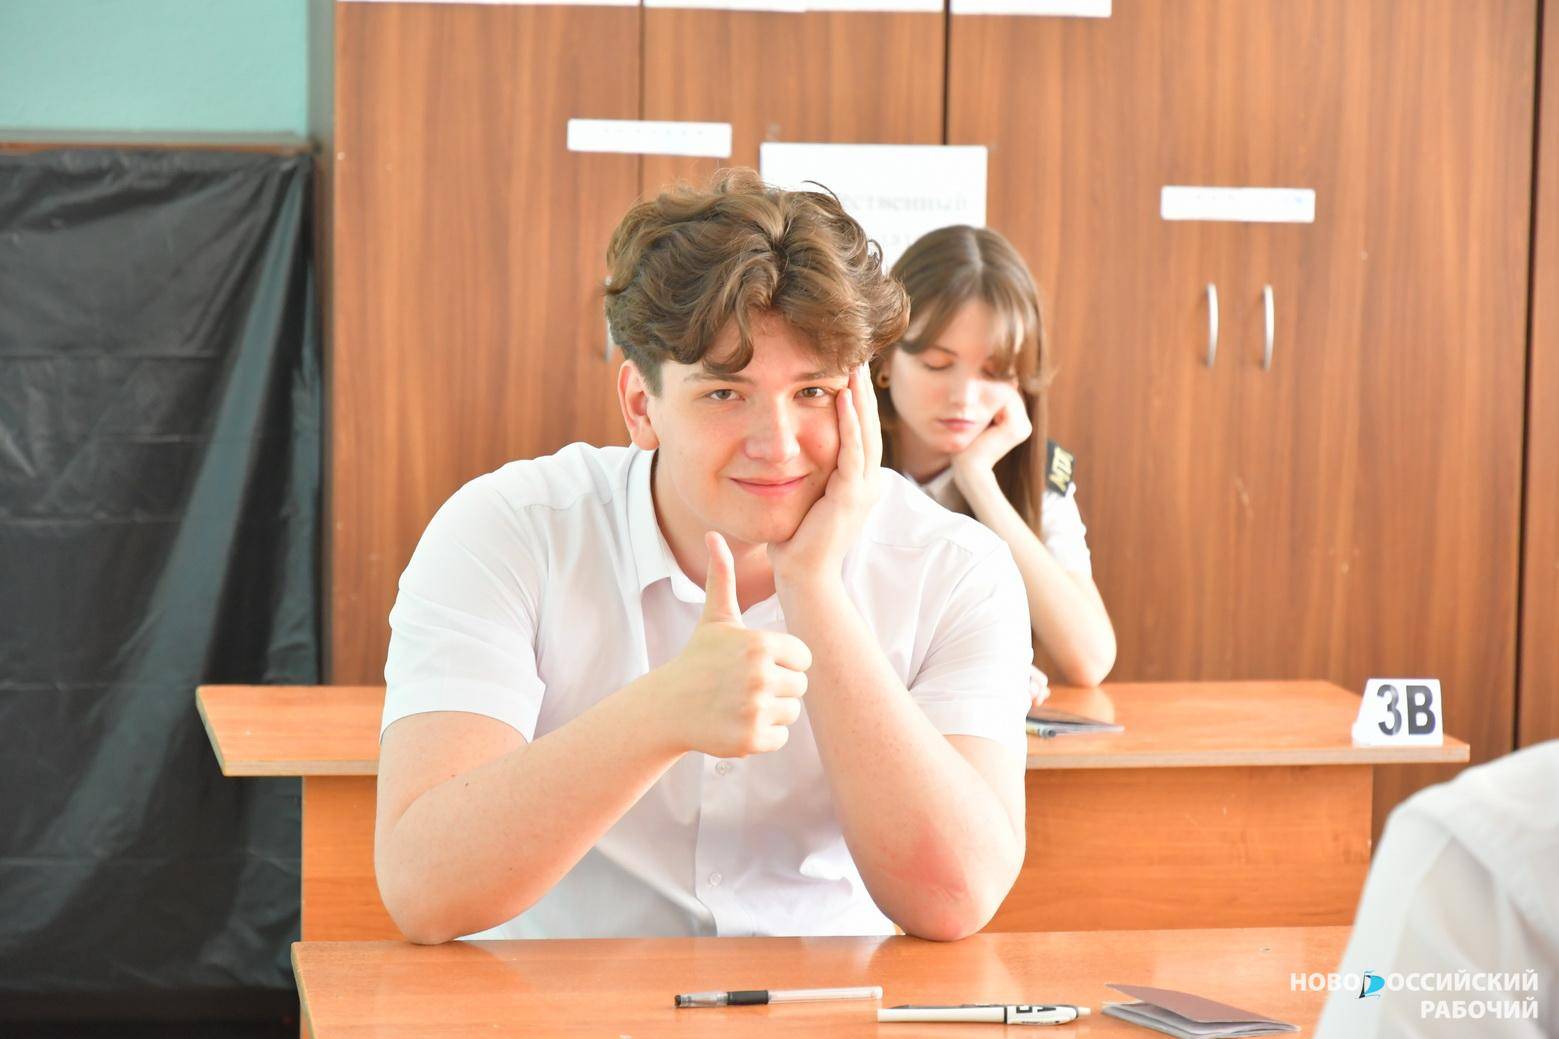 Новороссийские школьники готовятся к ЕГЭ. Осталось всего несколько дней